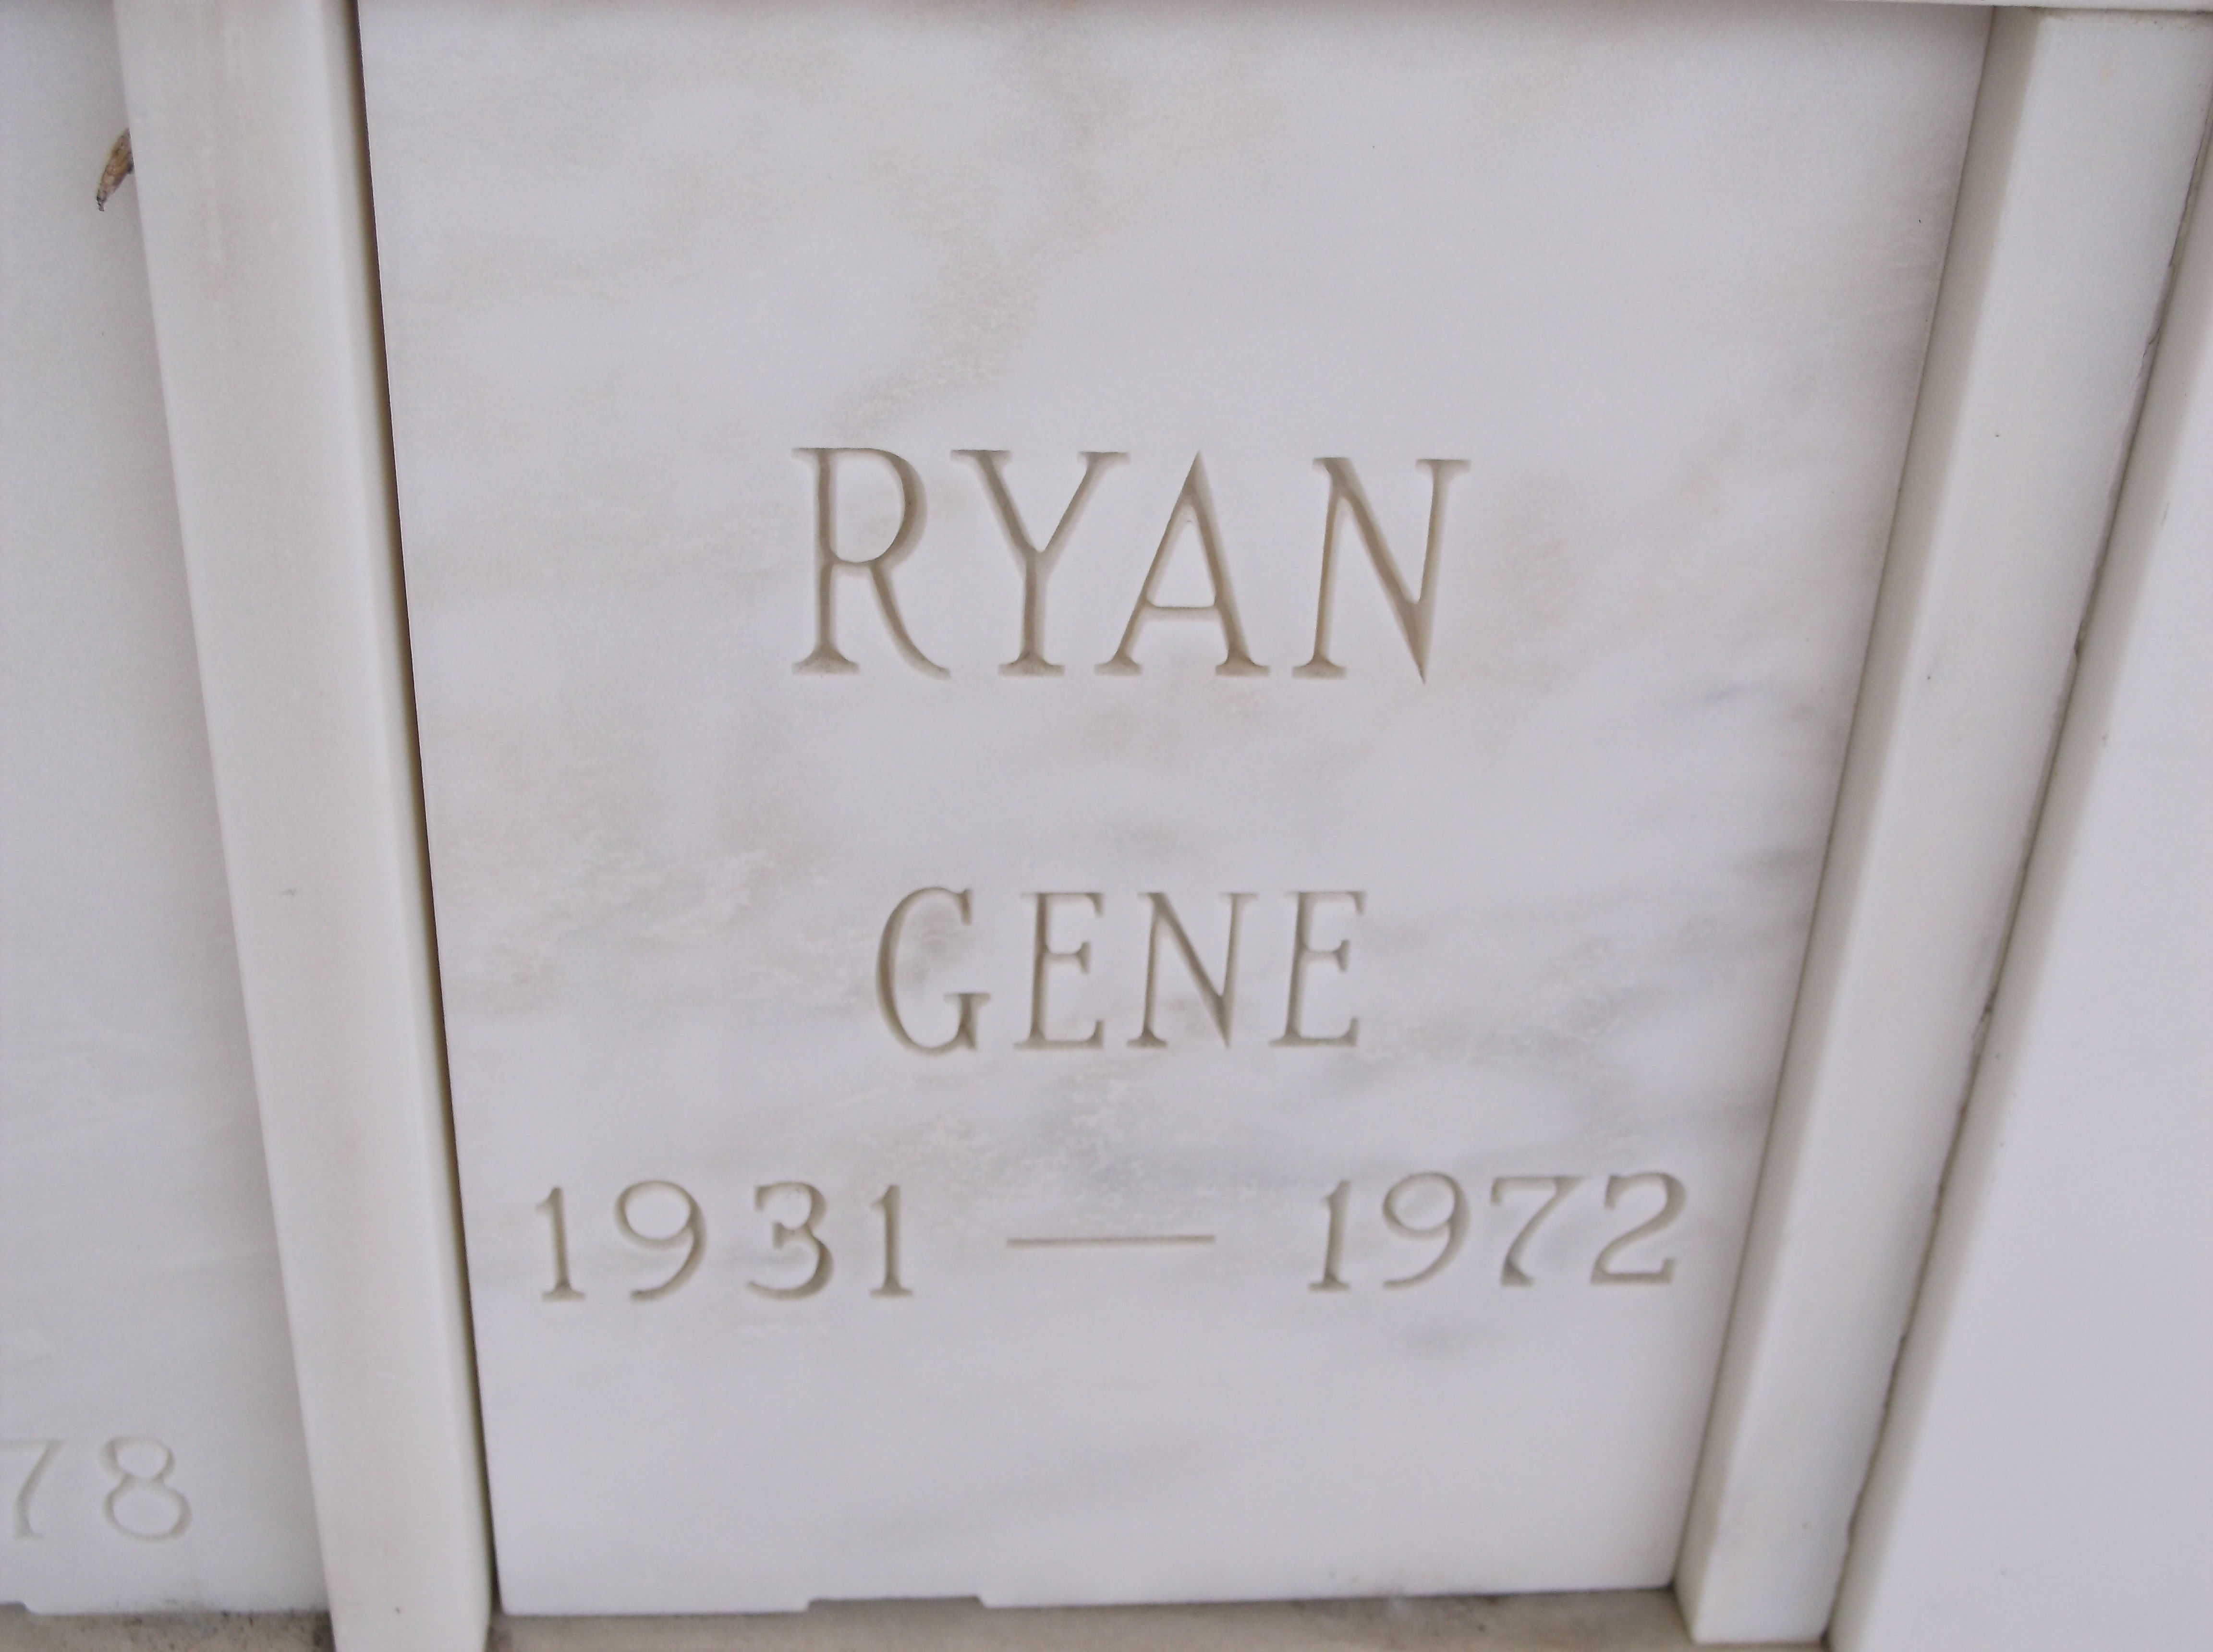 Gene Ryan